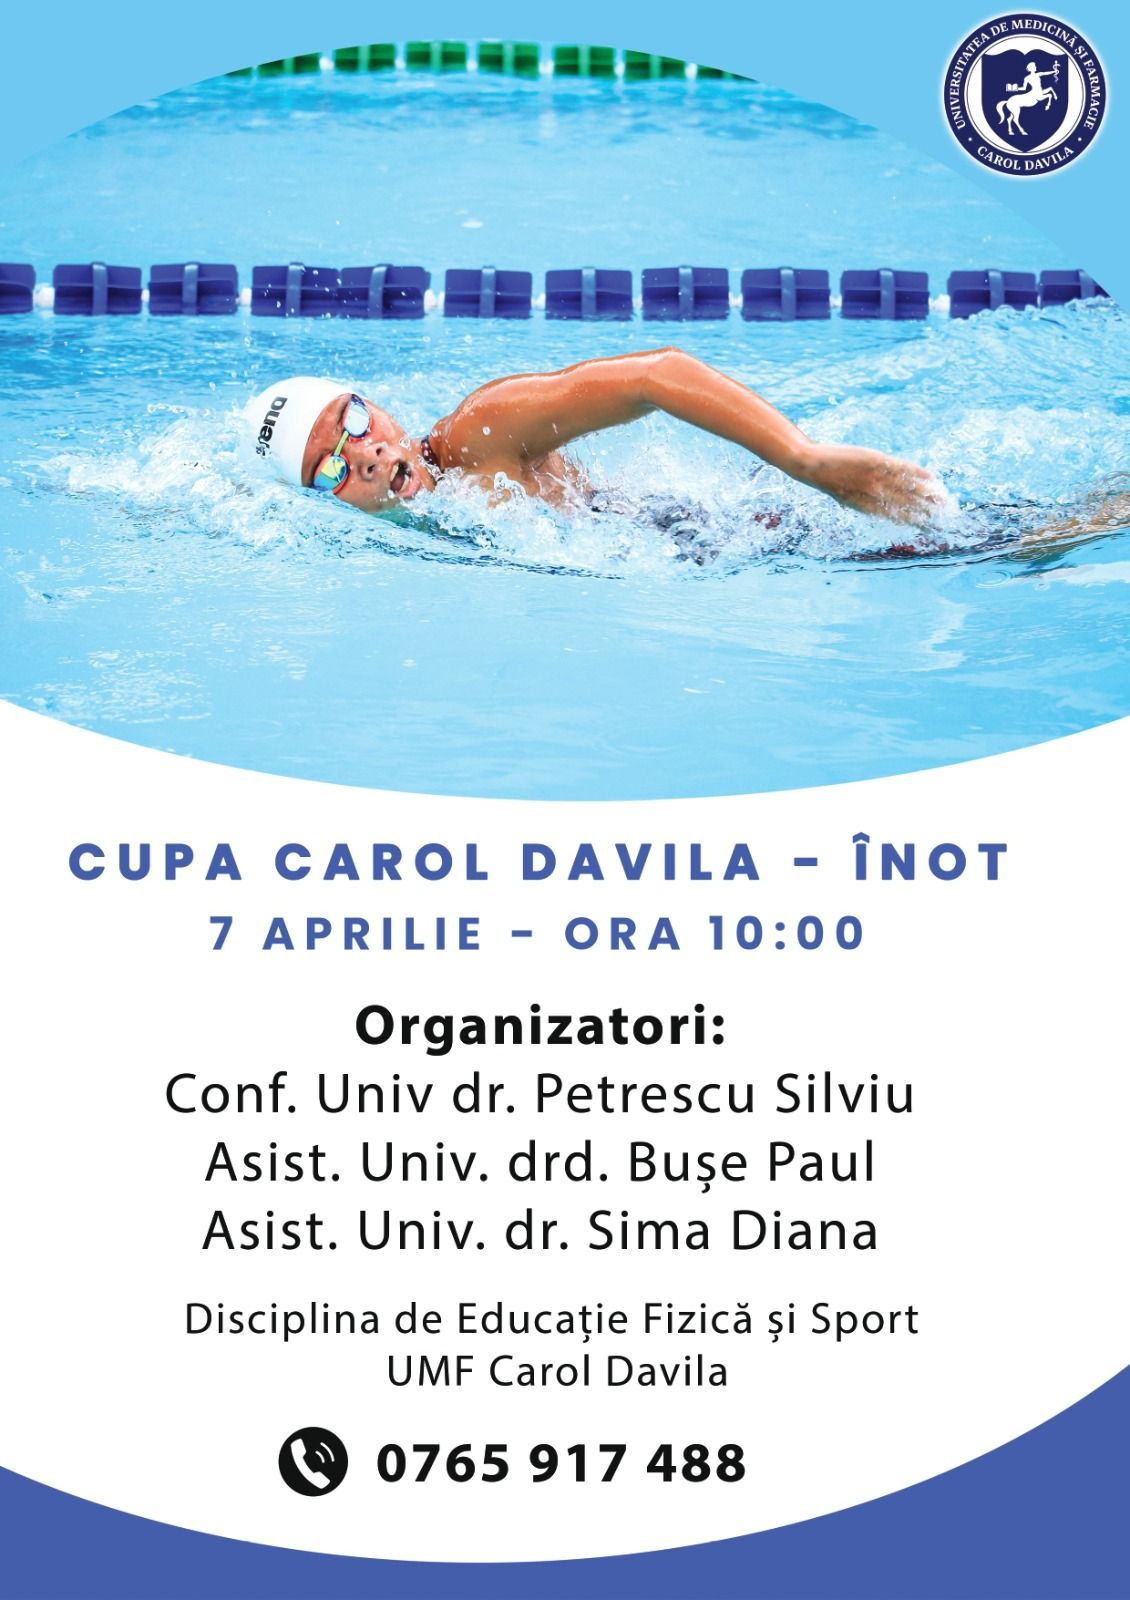 Competiția de înot „Cupa Carol Davila” are loc în aprilie